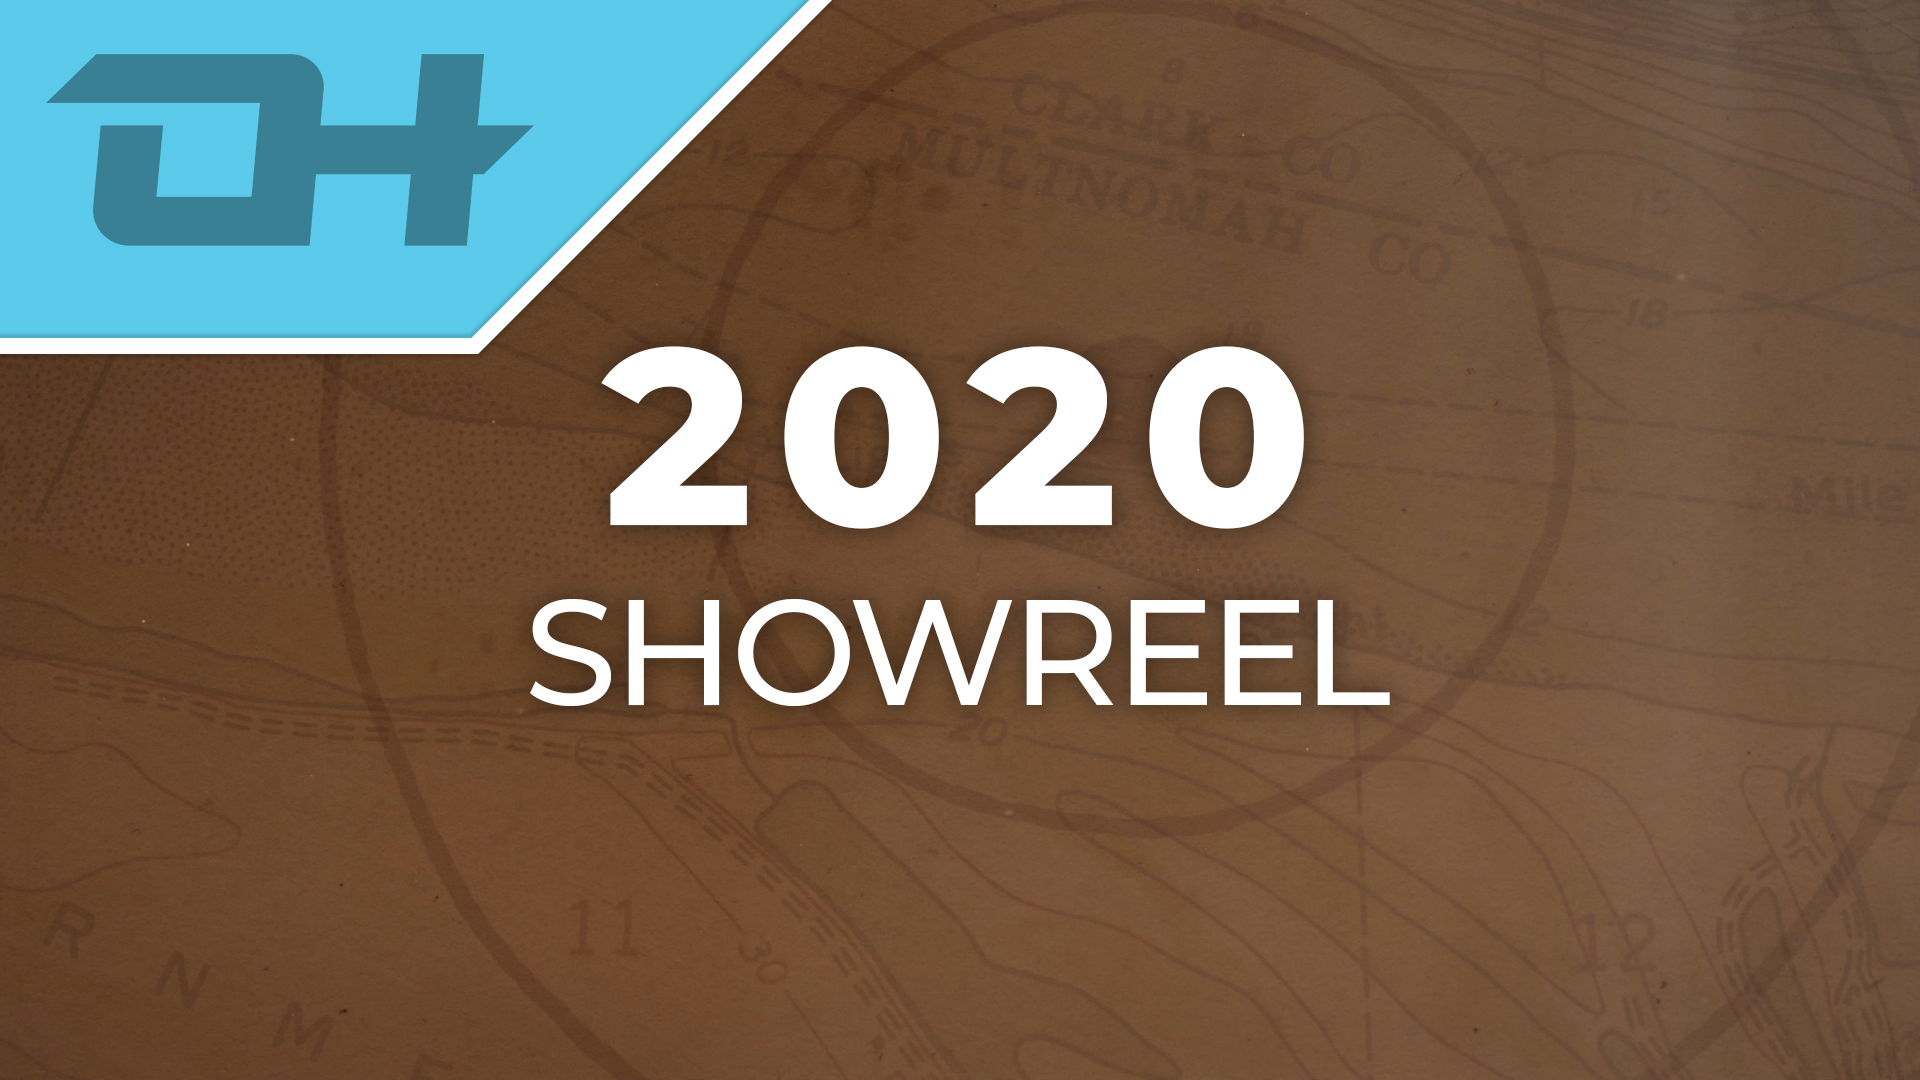 Showreel 2020